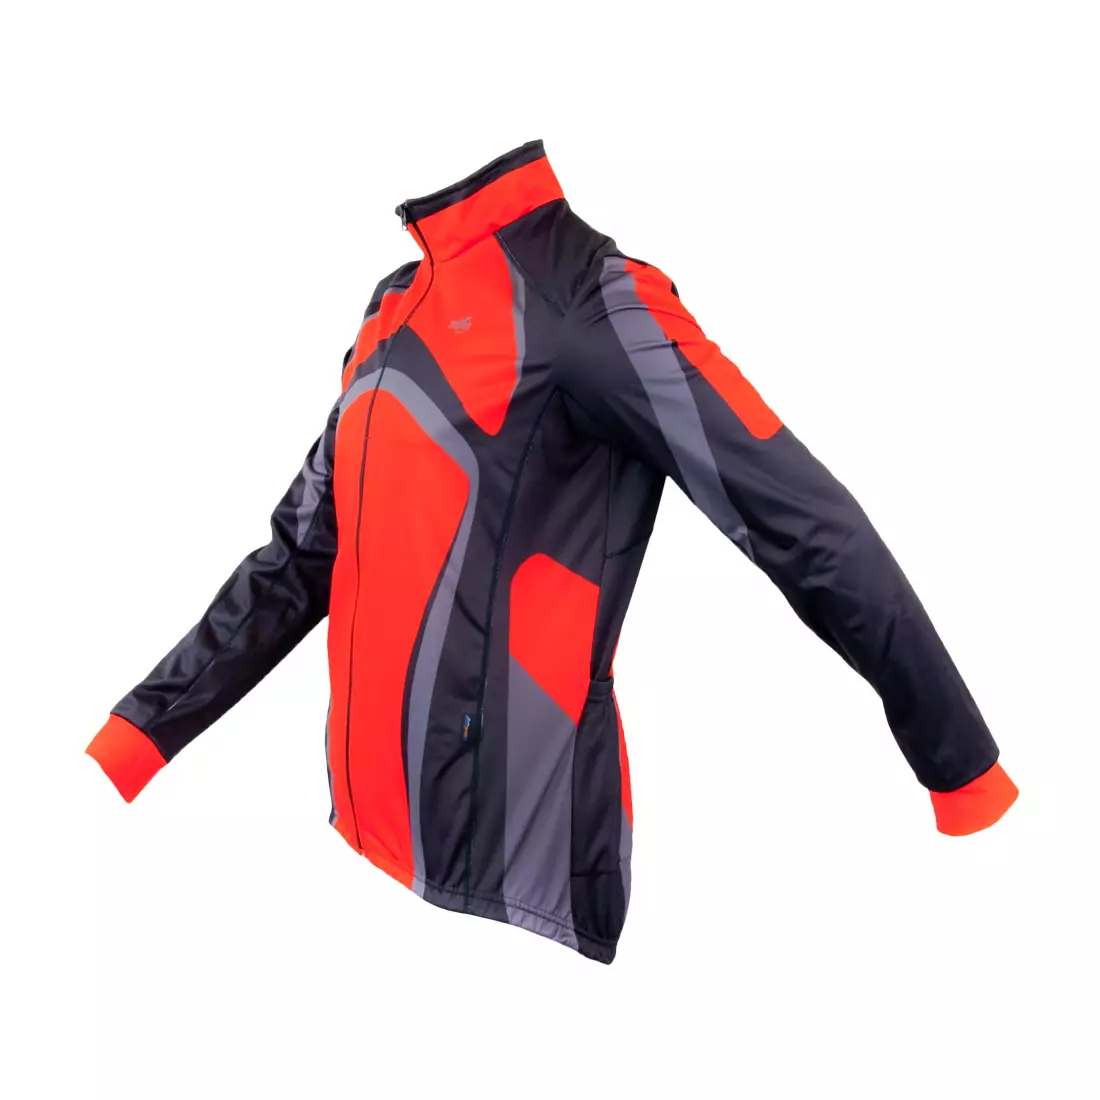 MikeSPORT DESIGN ZEN WIND - membrane cycling sweatshirt, color: Red